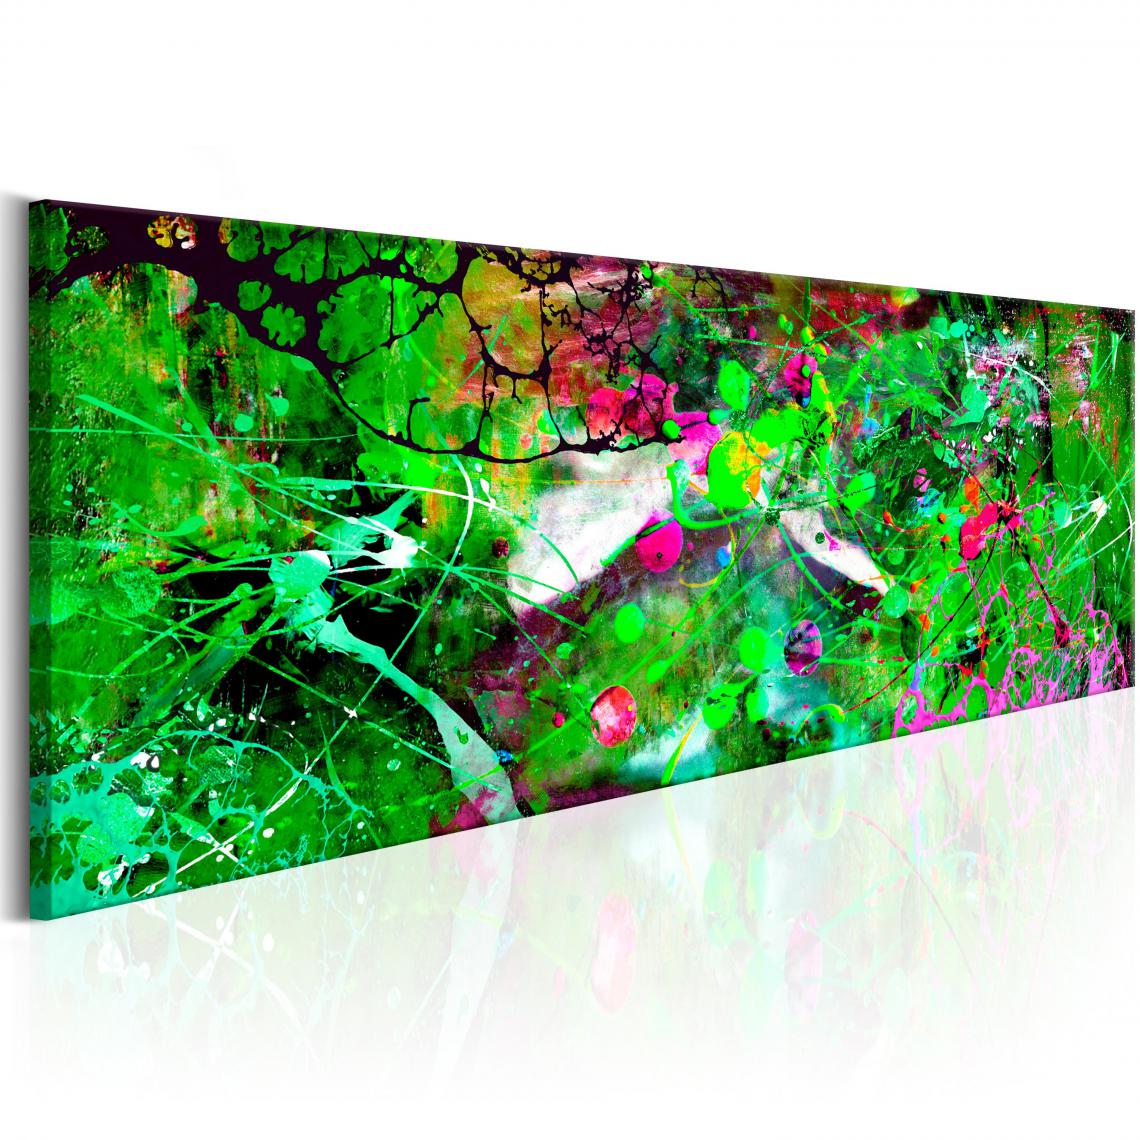 Decoshop26 - Tableau sur toile décoration murale image imprimée cadre en bois à suspendre Fantaisie verte 150x50 cm 11_0001792 - Tableaux, peintures